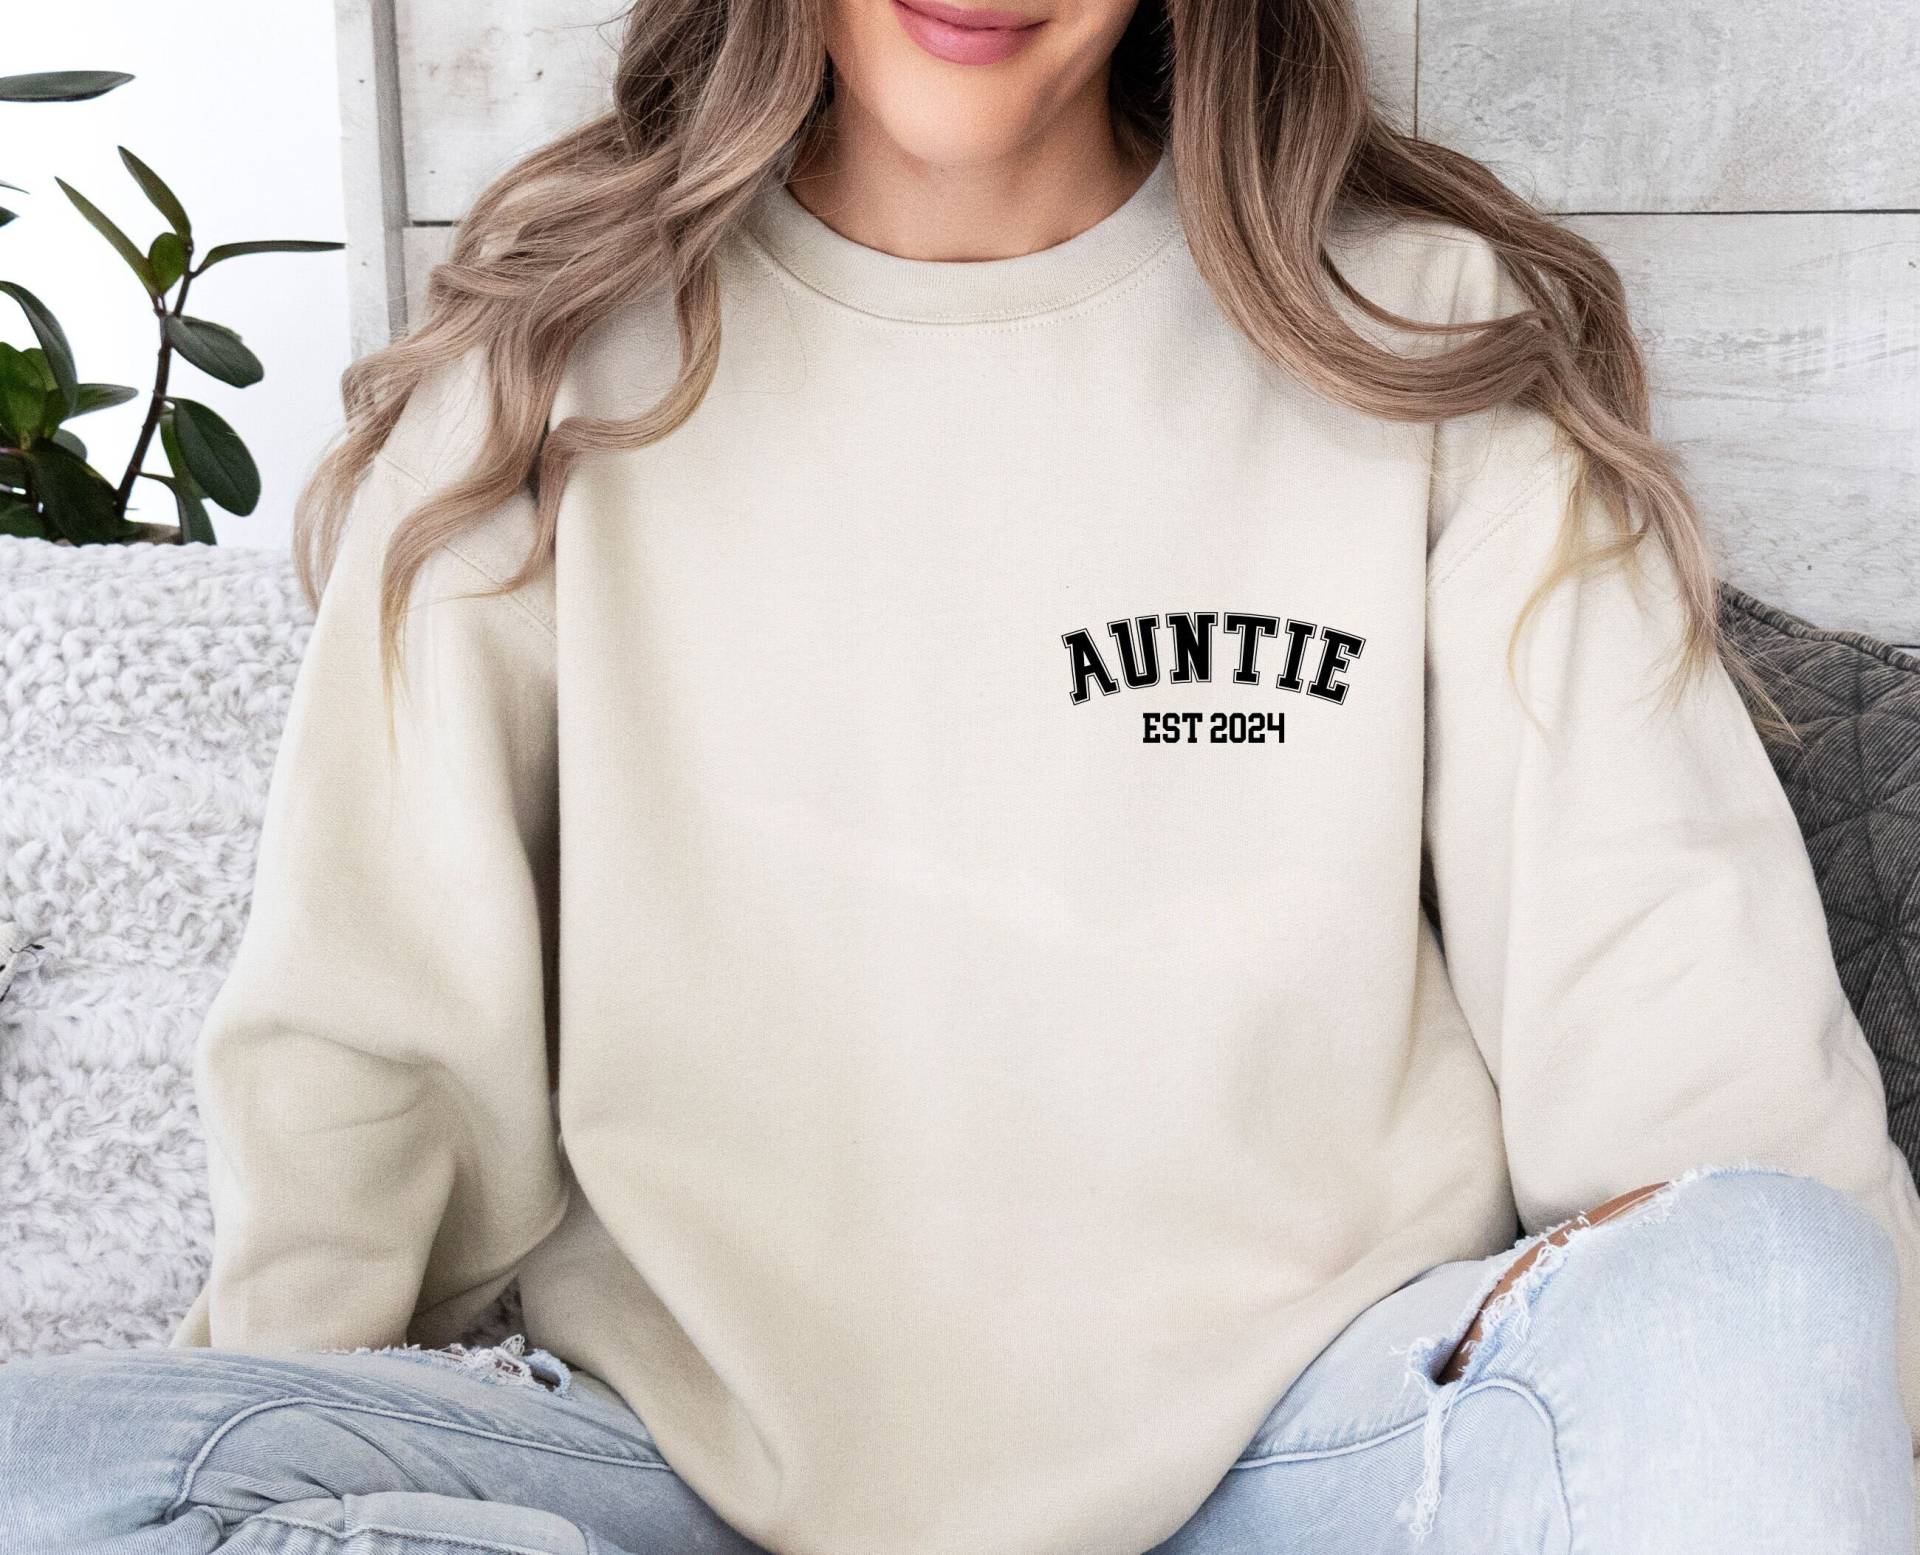 Tante Sweatshirt, Pullover, Benutzerdefinierte Geschenk, Neue Tante, Geschenk Zu Sein, Süße Für von LismoreBoutique